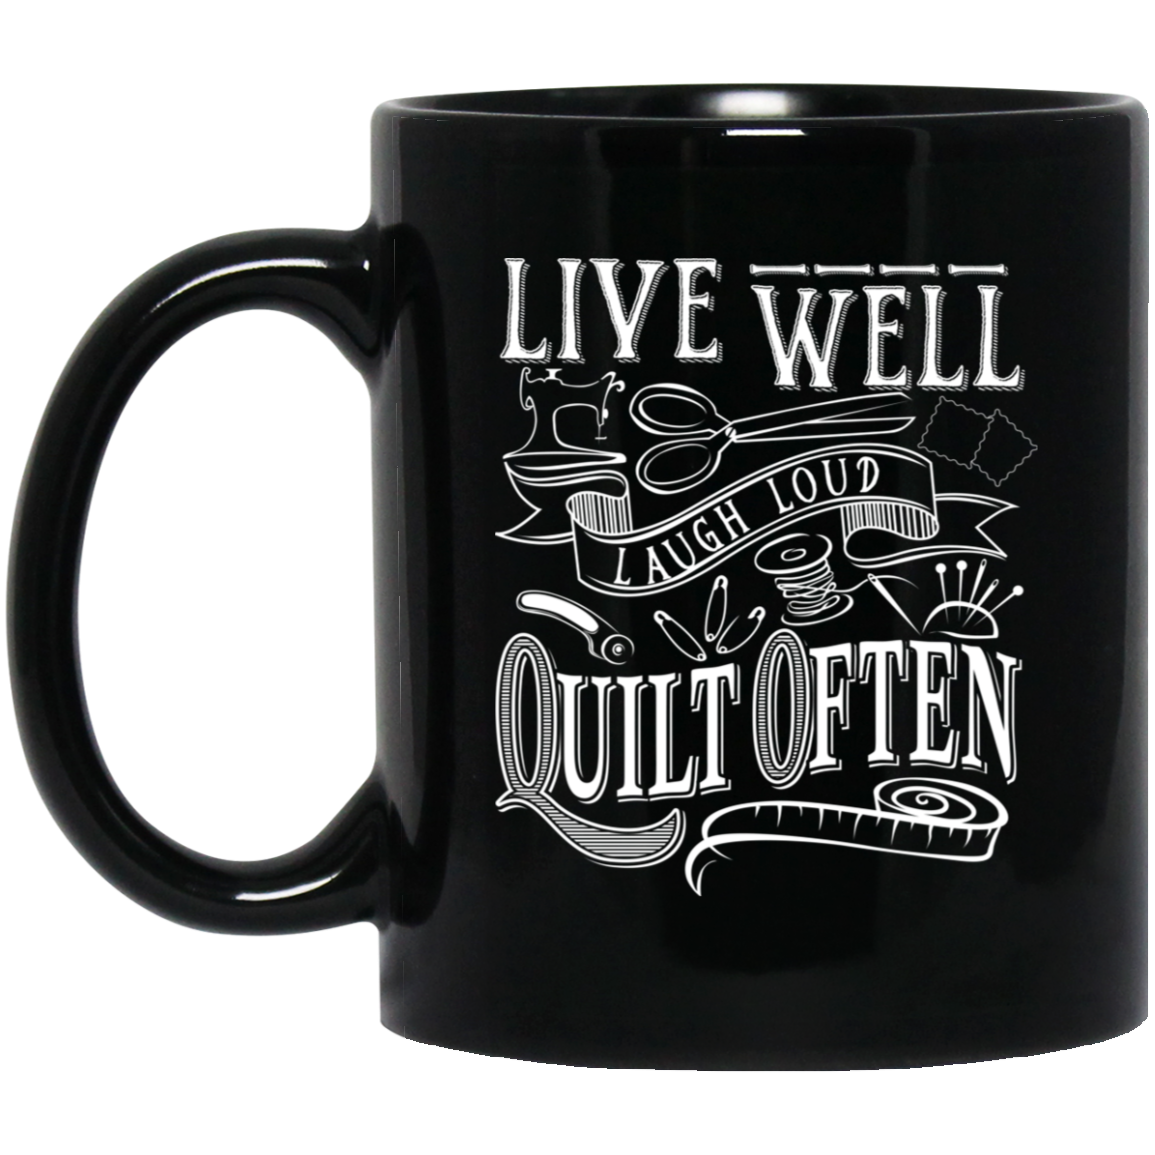 Live Well - Quilt Often Black Mugs